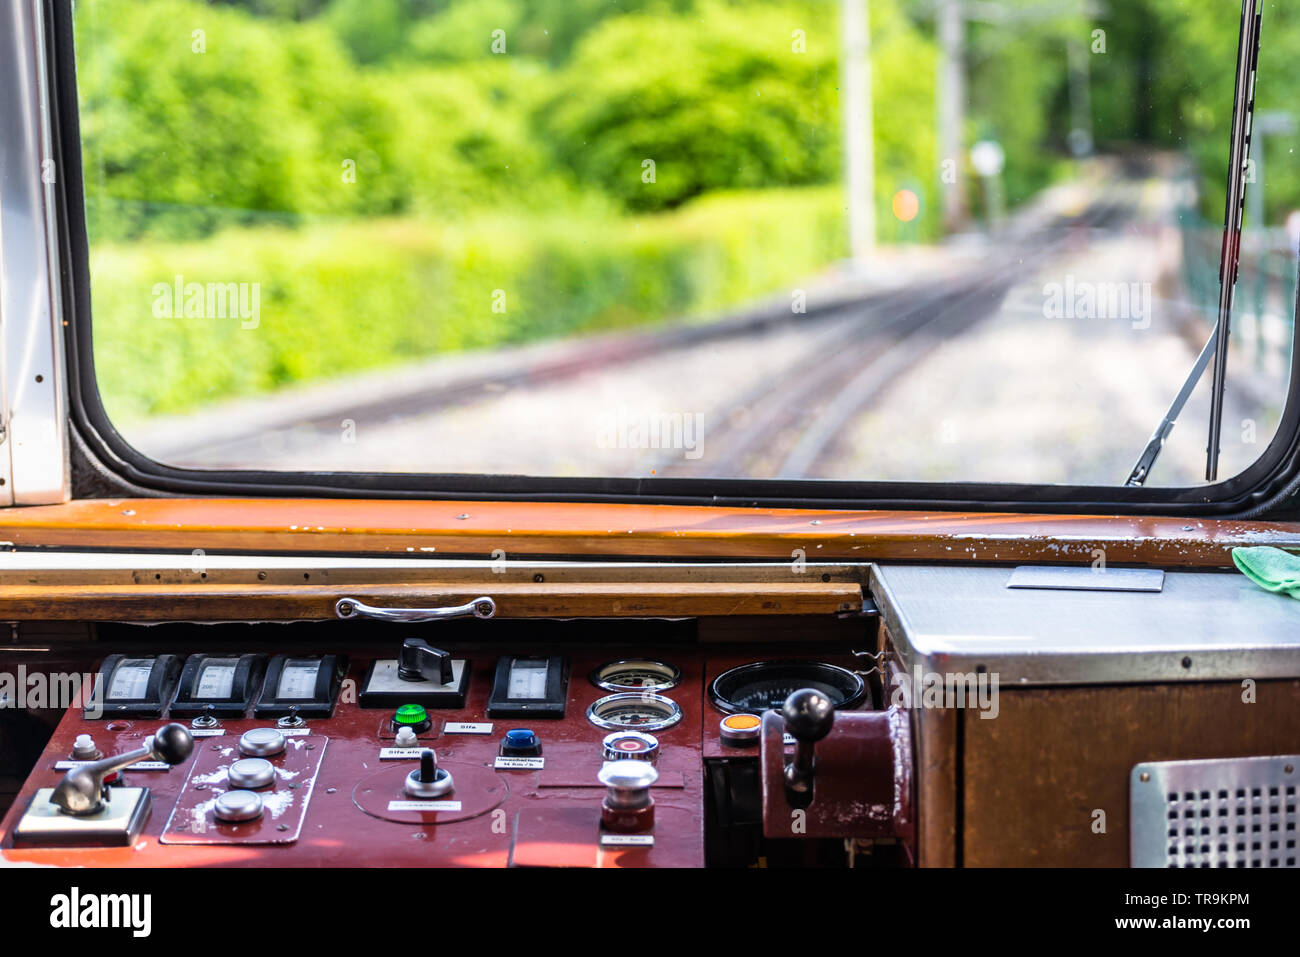 Une vue de la fenêtre d'un train de chemin de fer, un tableau de bord visible, les voies, les arbres et un ciel bleu avec des nuages blancs. Banque D'Images